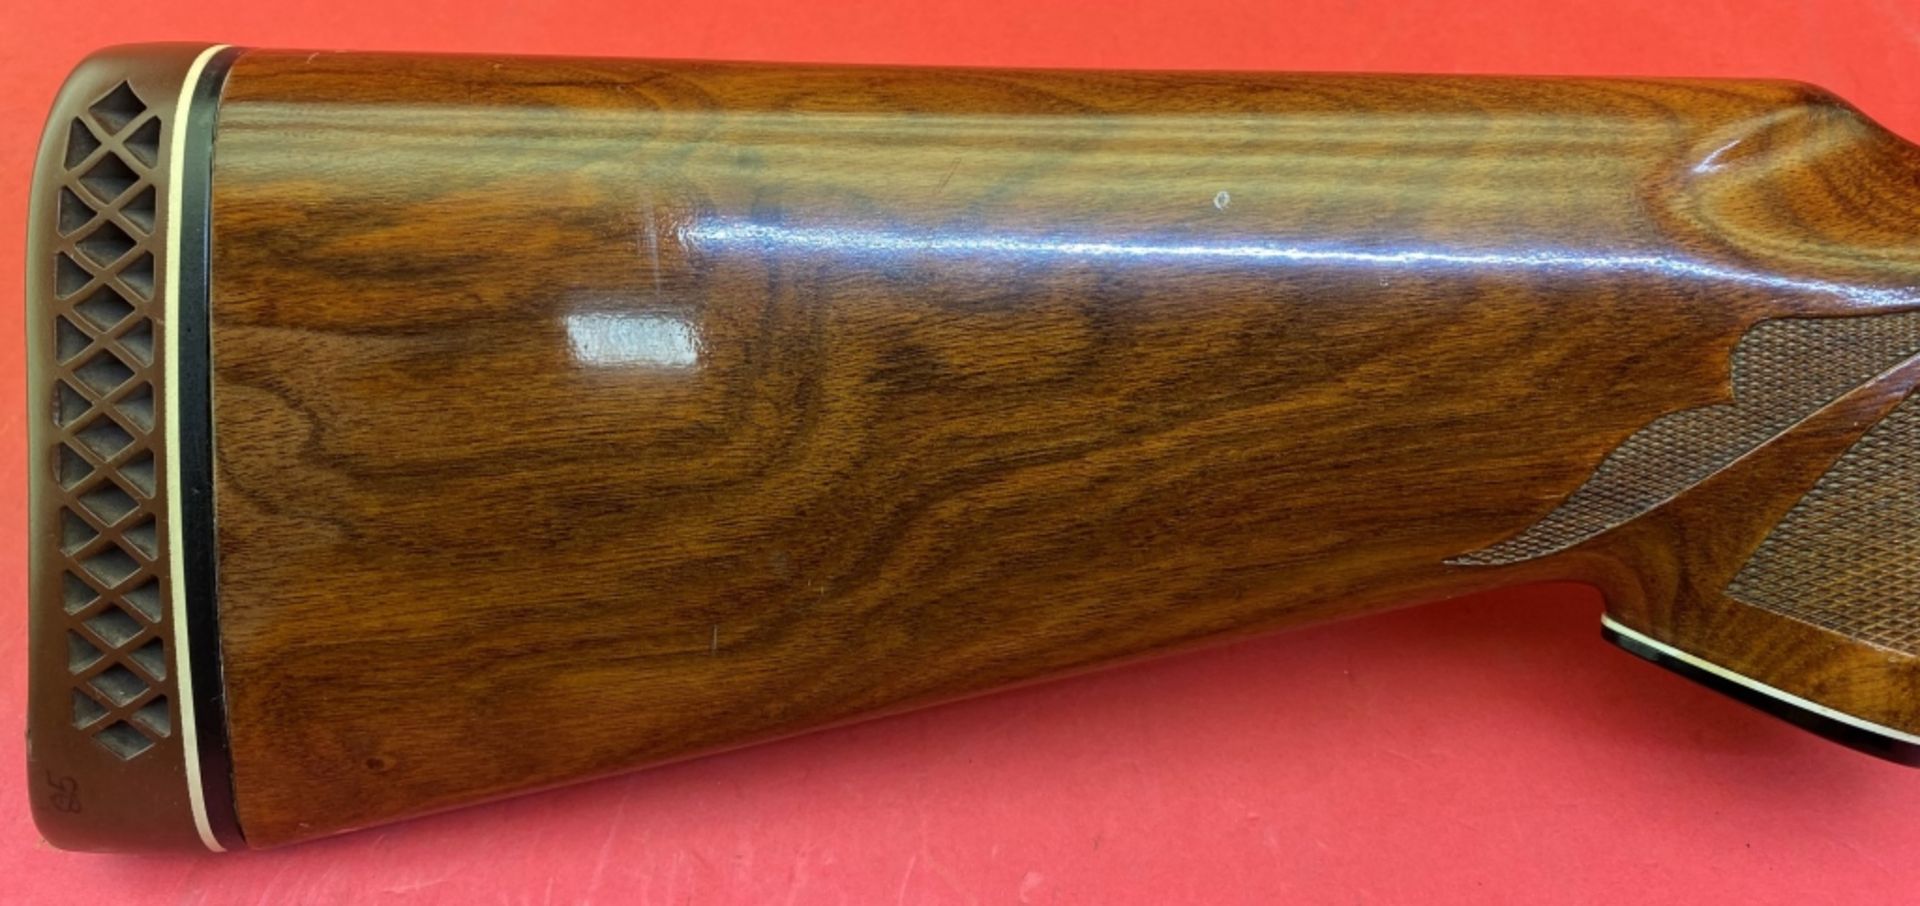 Remington 1100 12 ga Shotgun - Image 2 of 12